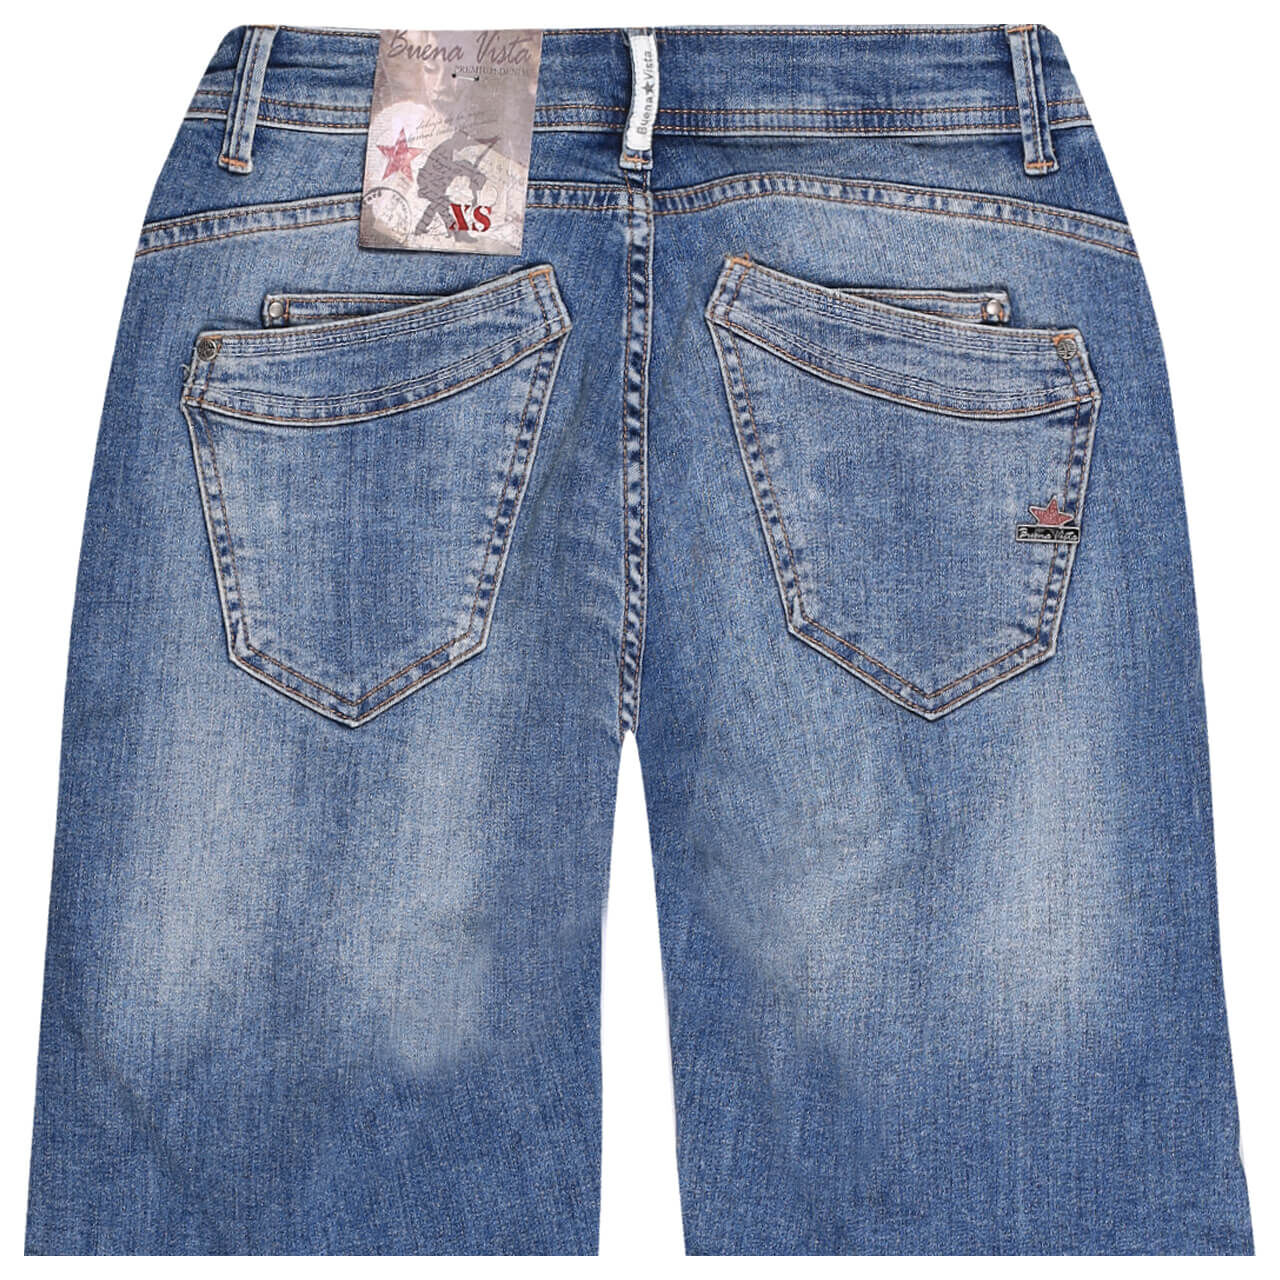 Buena Vista Jeans Malibu-Short Stretch Denim für Damen in Blau verwaschen mit Destroyed-Effekten, FarbNr.: 4794